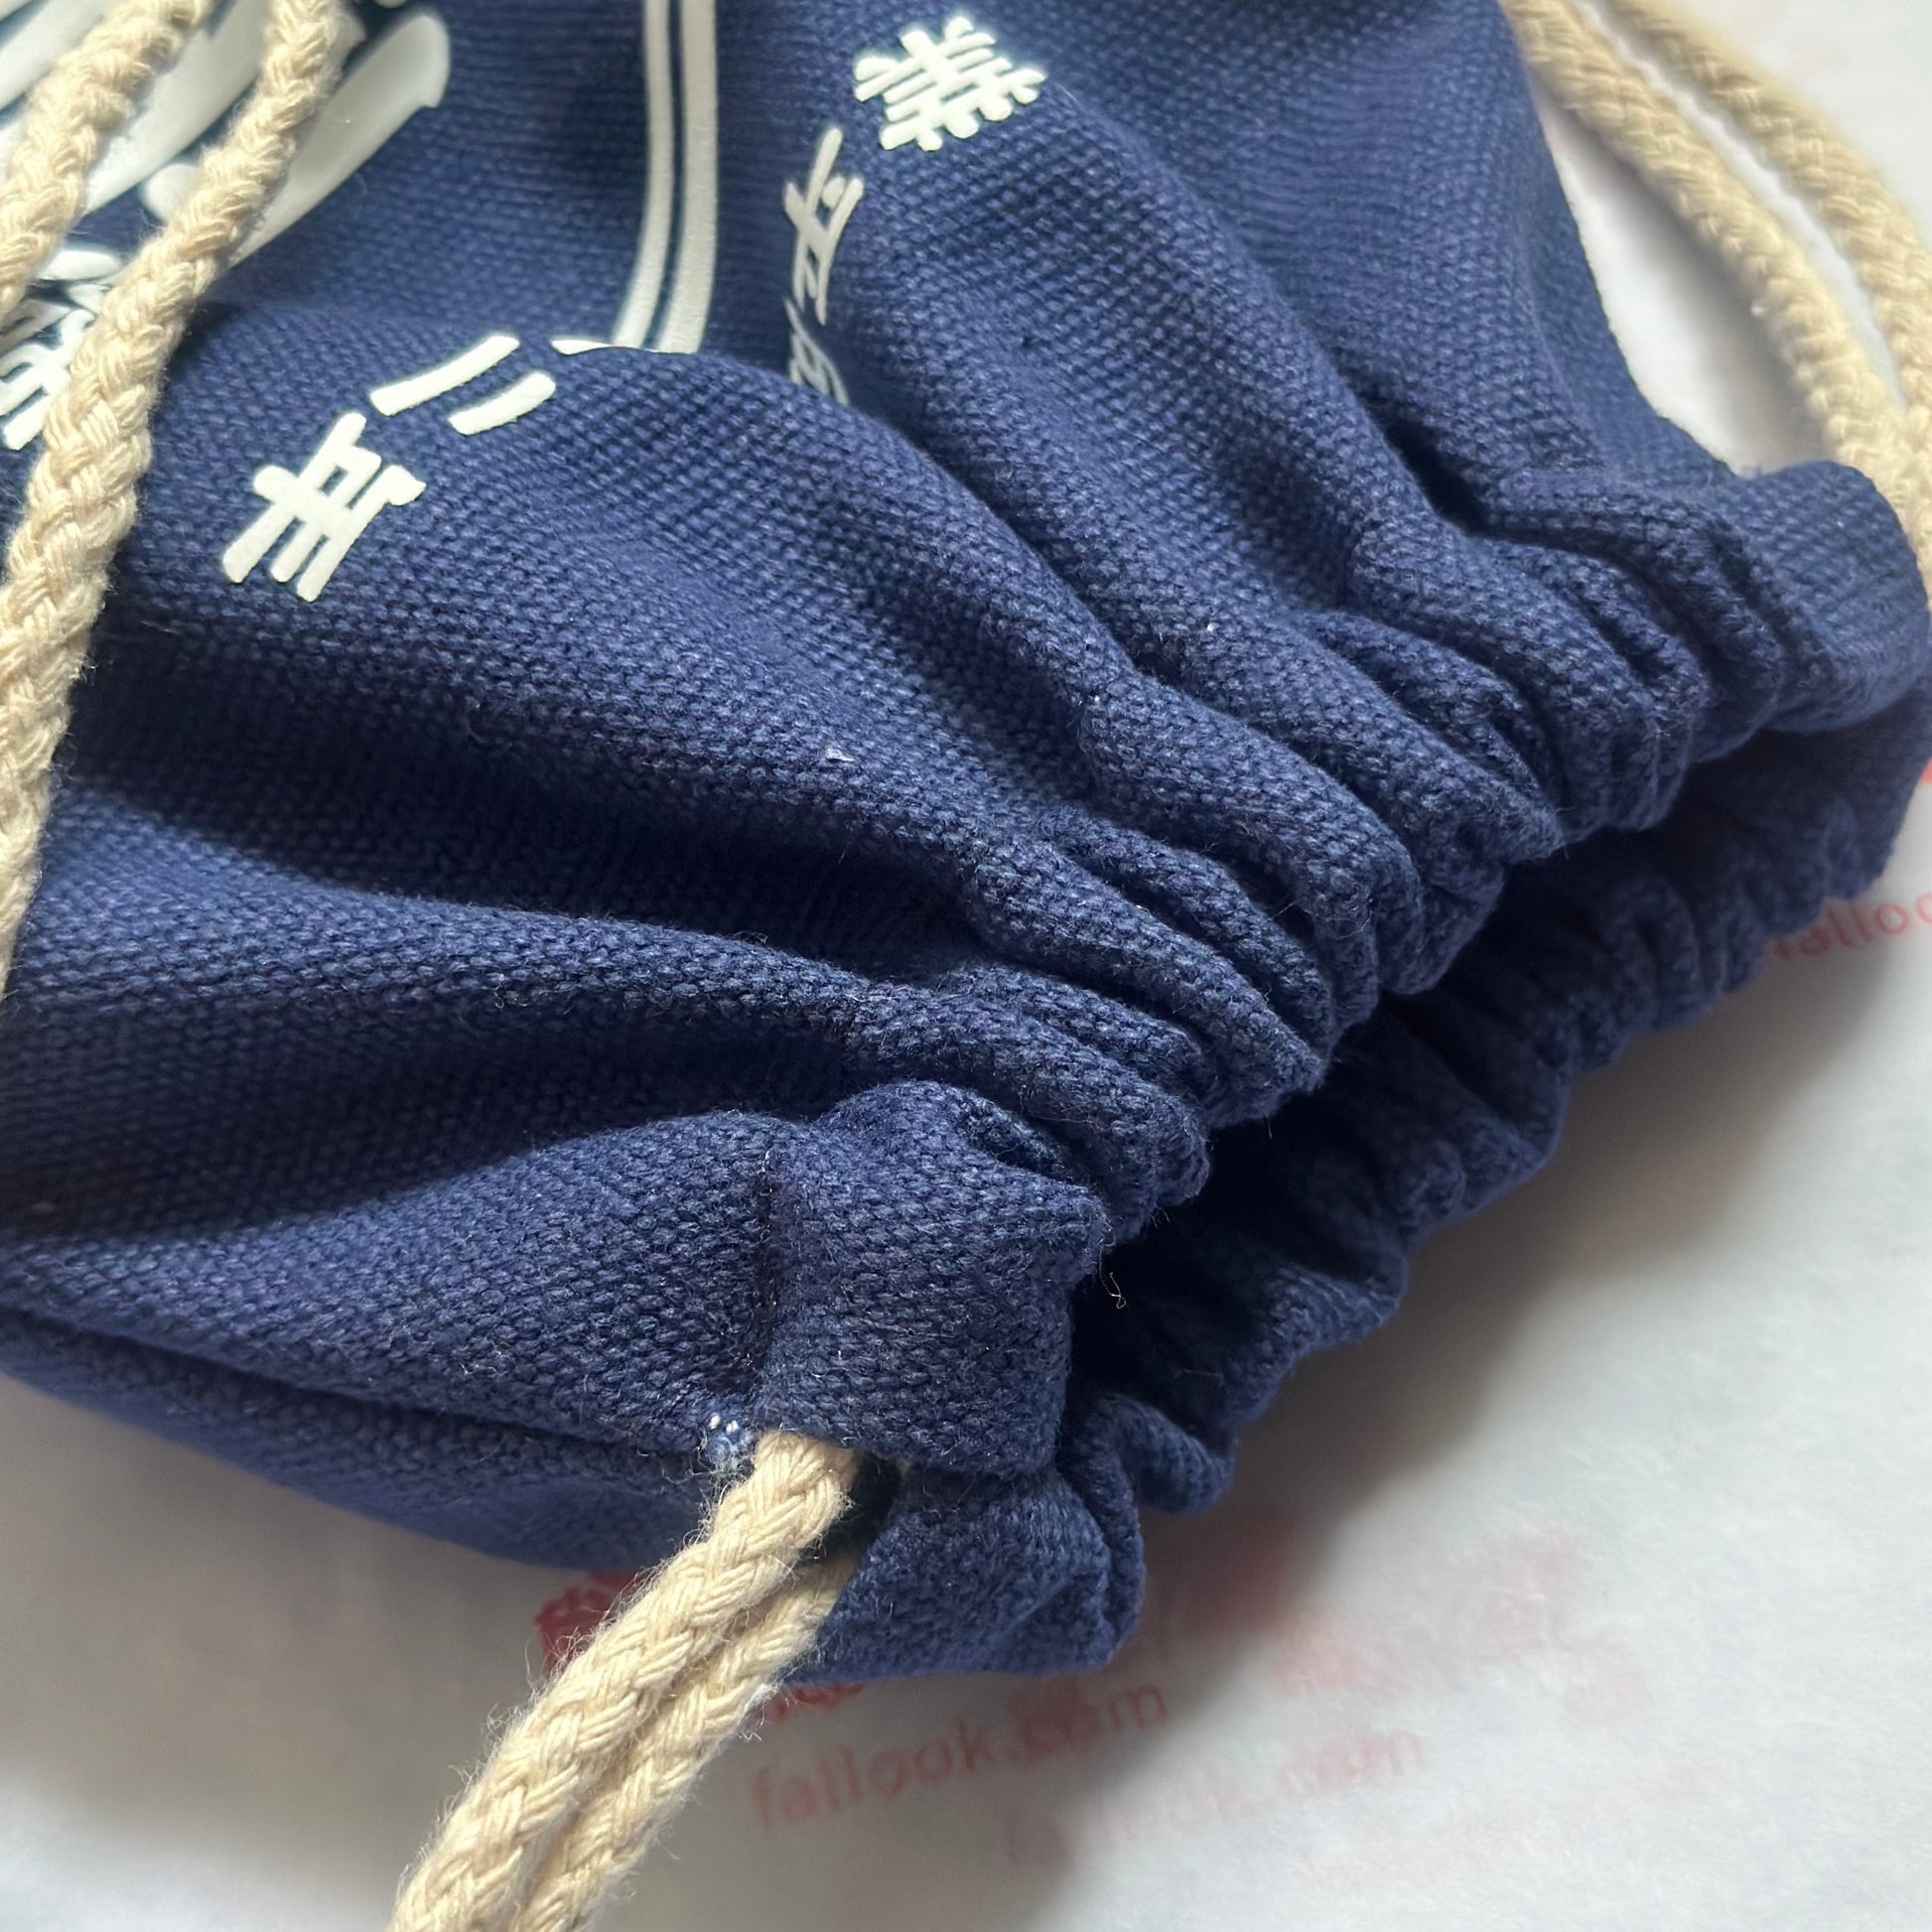 商店風－デニム風巾着袋 - 和風デザインで名前や年号を入れるオリジナル巾着袋